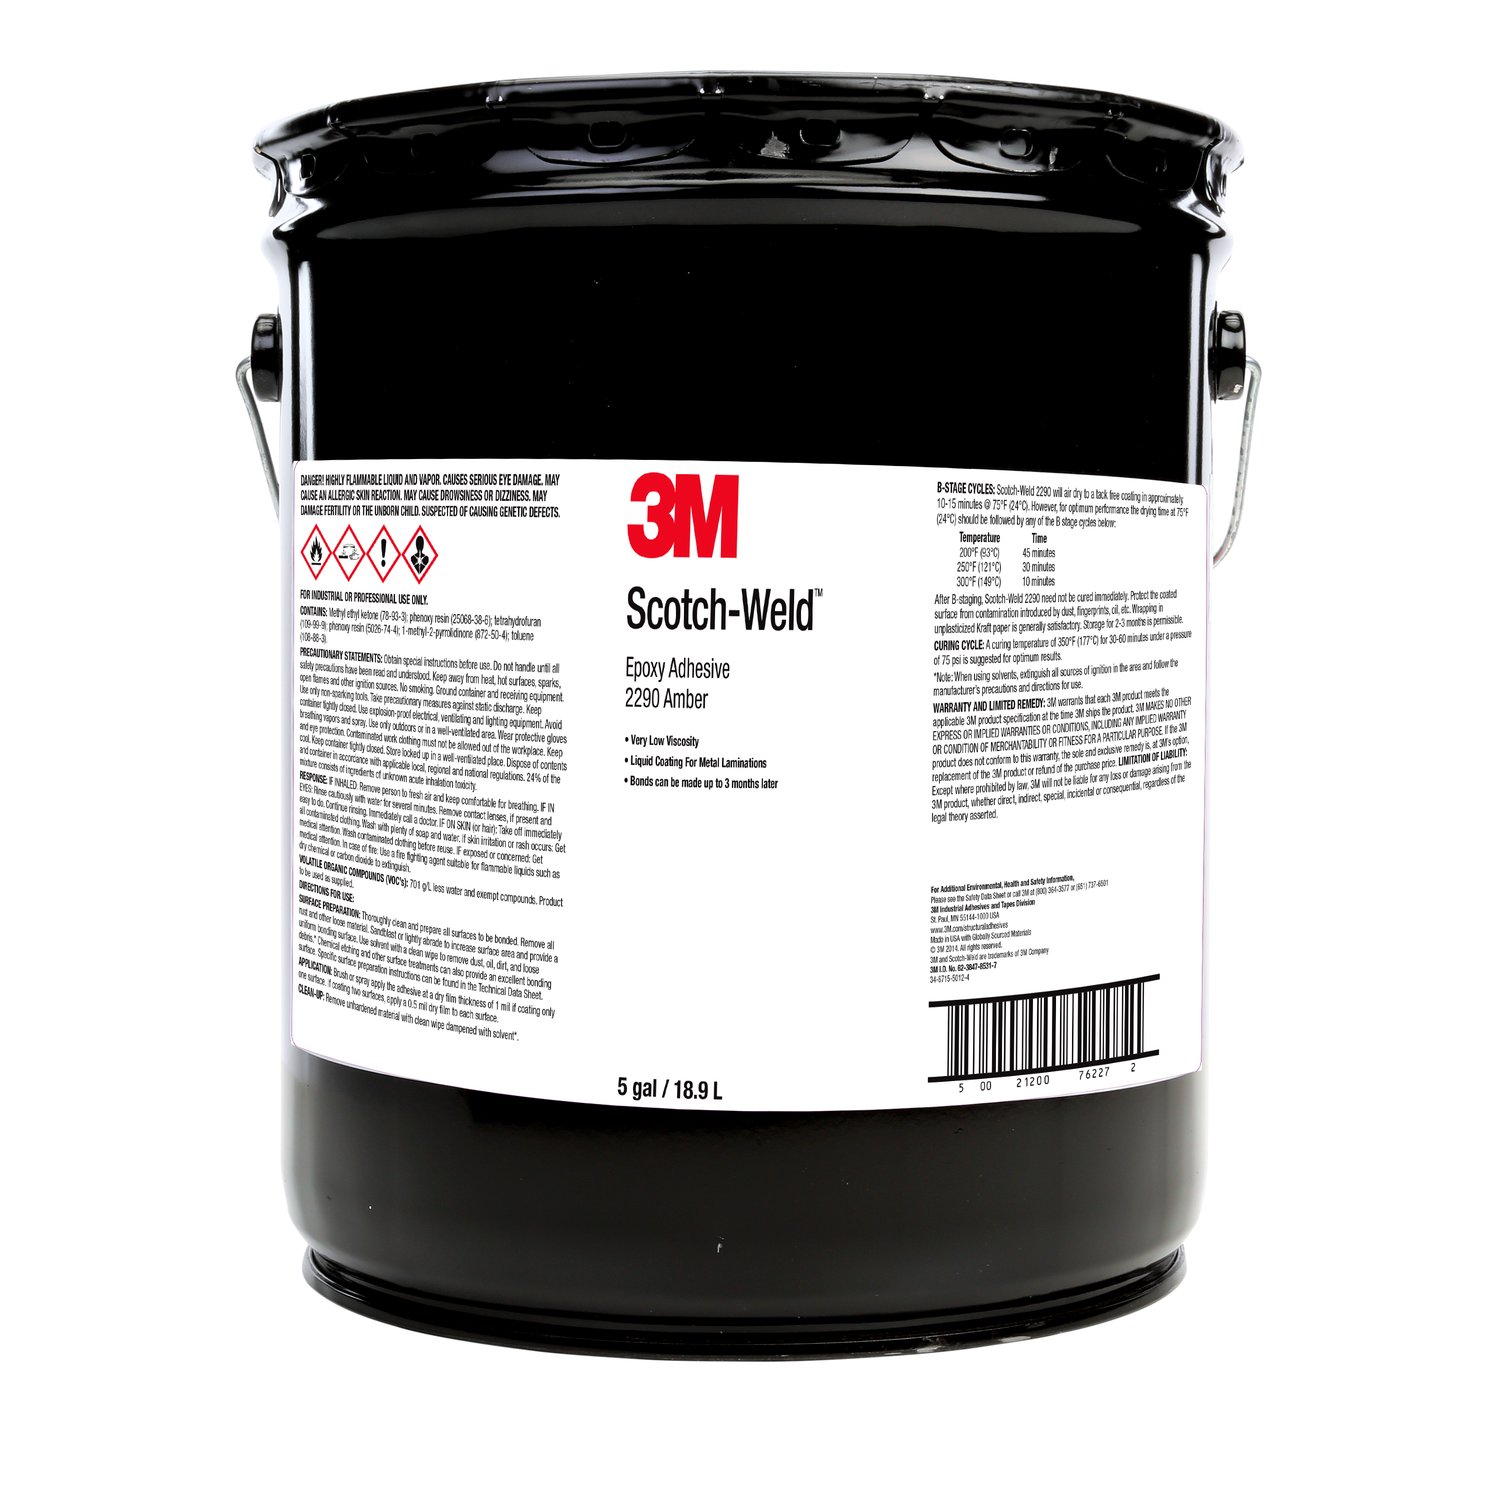 7100144895 - 3M Scotch-Weld Epoxy Adhesive/Coating 2290, Amber, 5 Gallon (Pail),
Drum